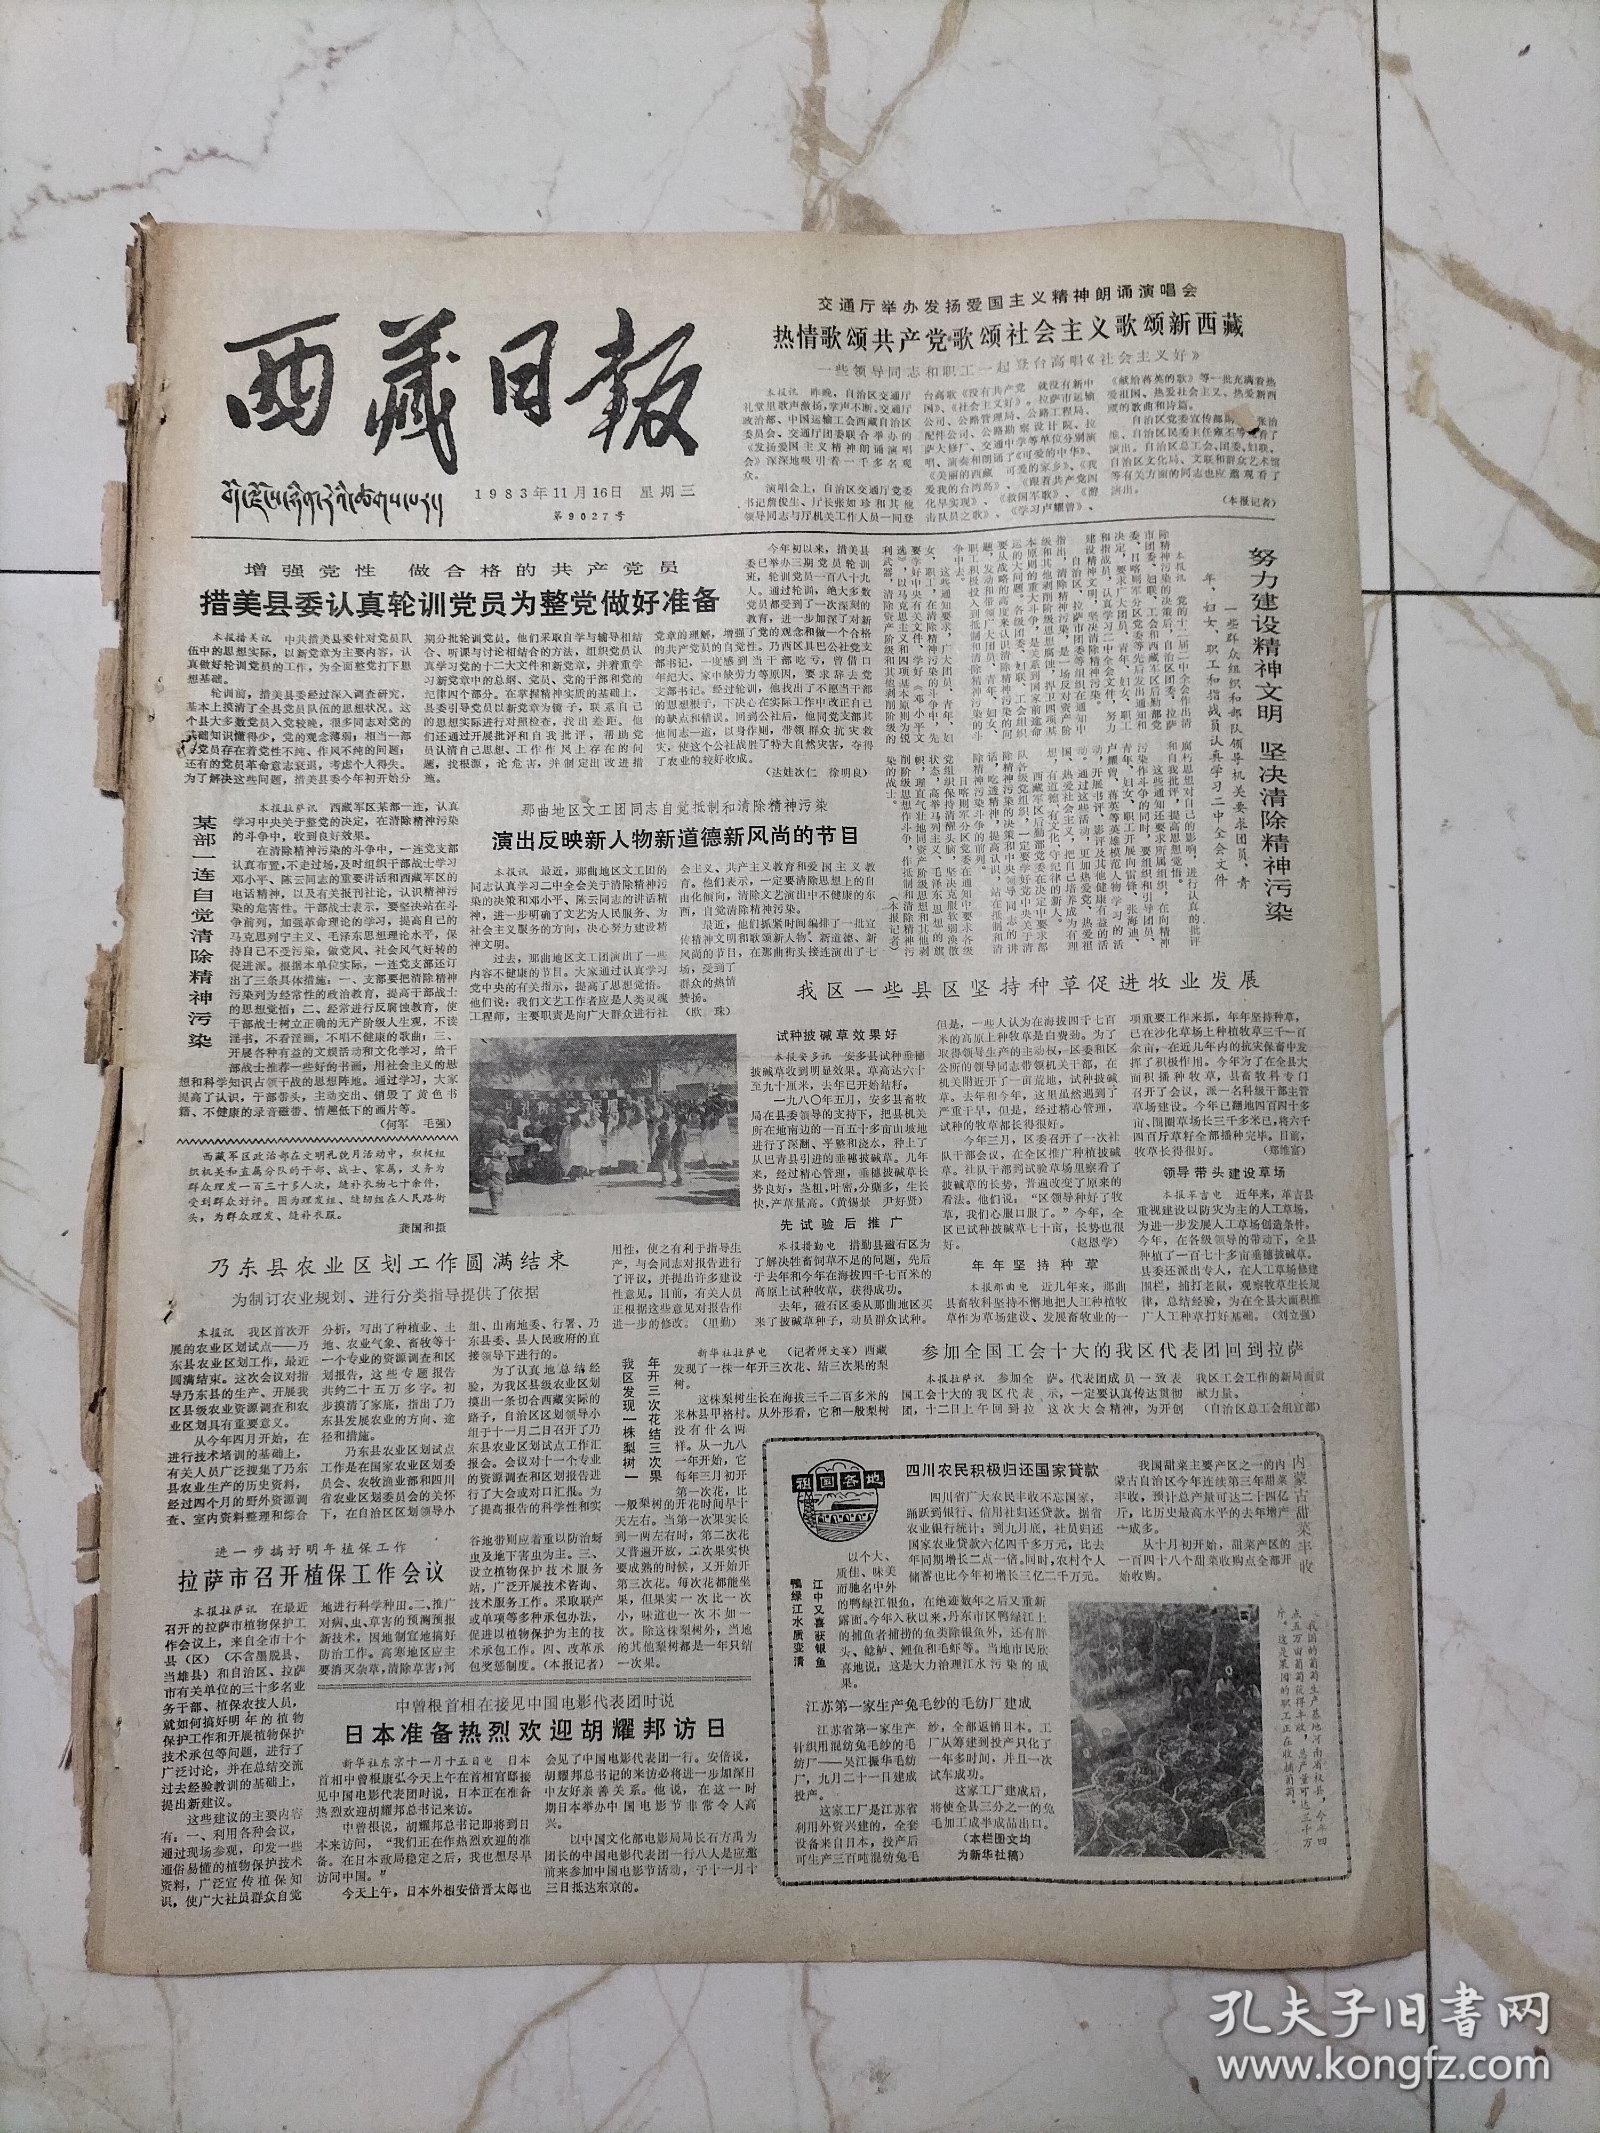 西藏日报1993年11月16日，措美县委认真轮训党员为整党做好准备，乃东县农业区规划圆满结束，四川农民积极归还国家贷款，梁山儿女跨骏马，刘伯承司令员和小叶丹煞血结盟的故事